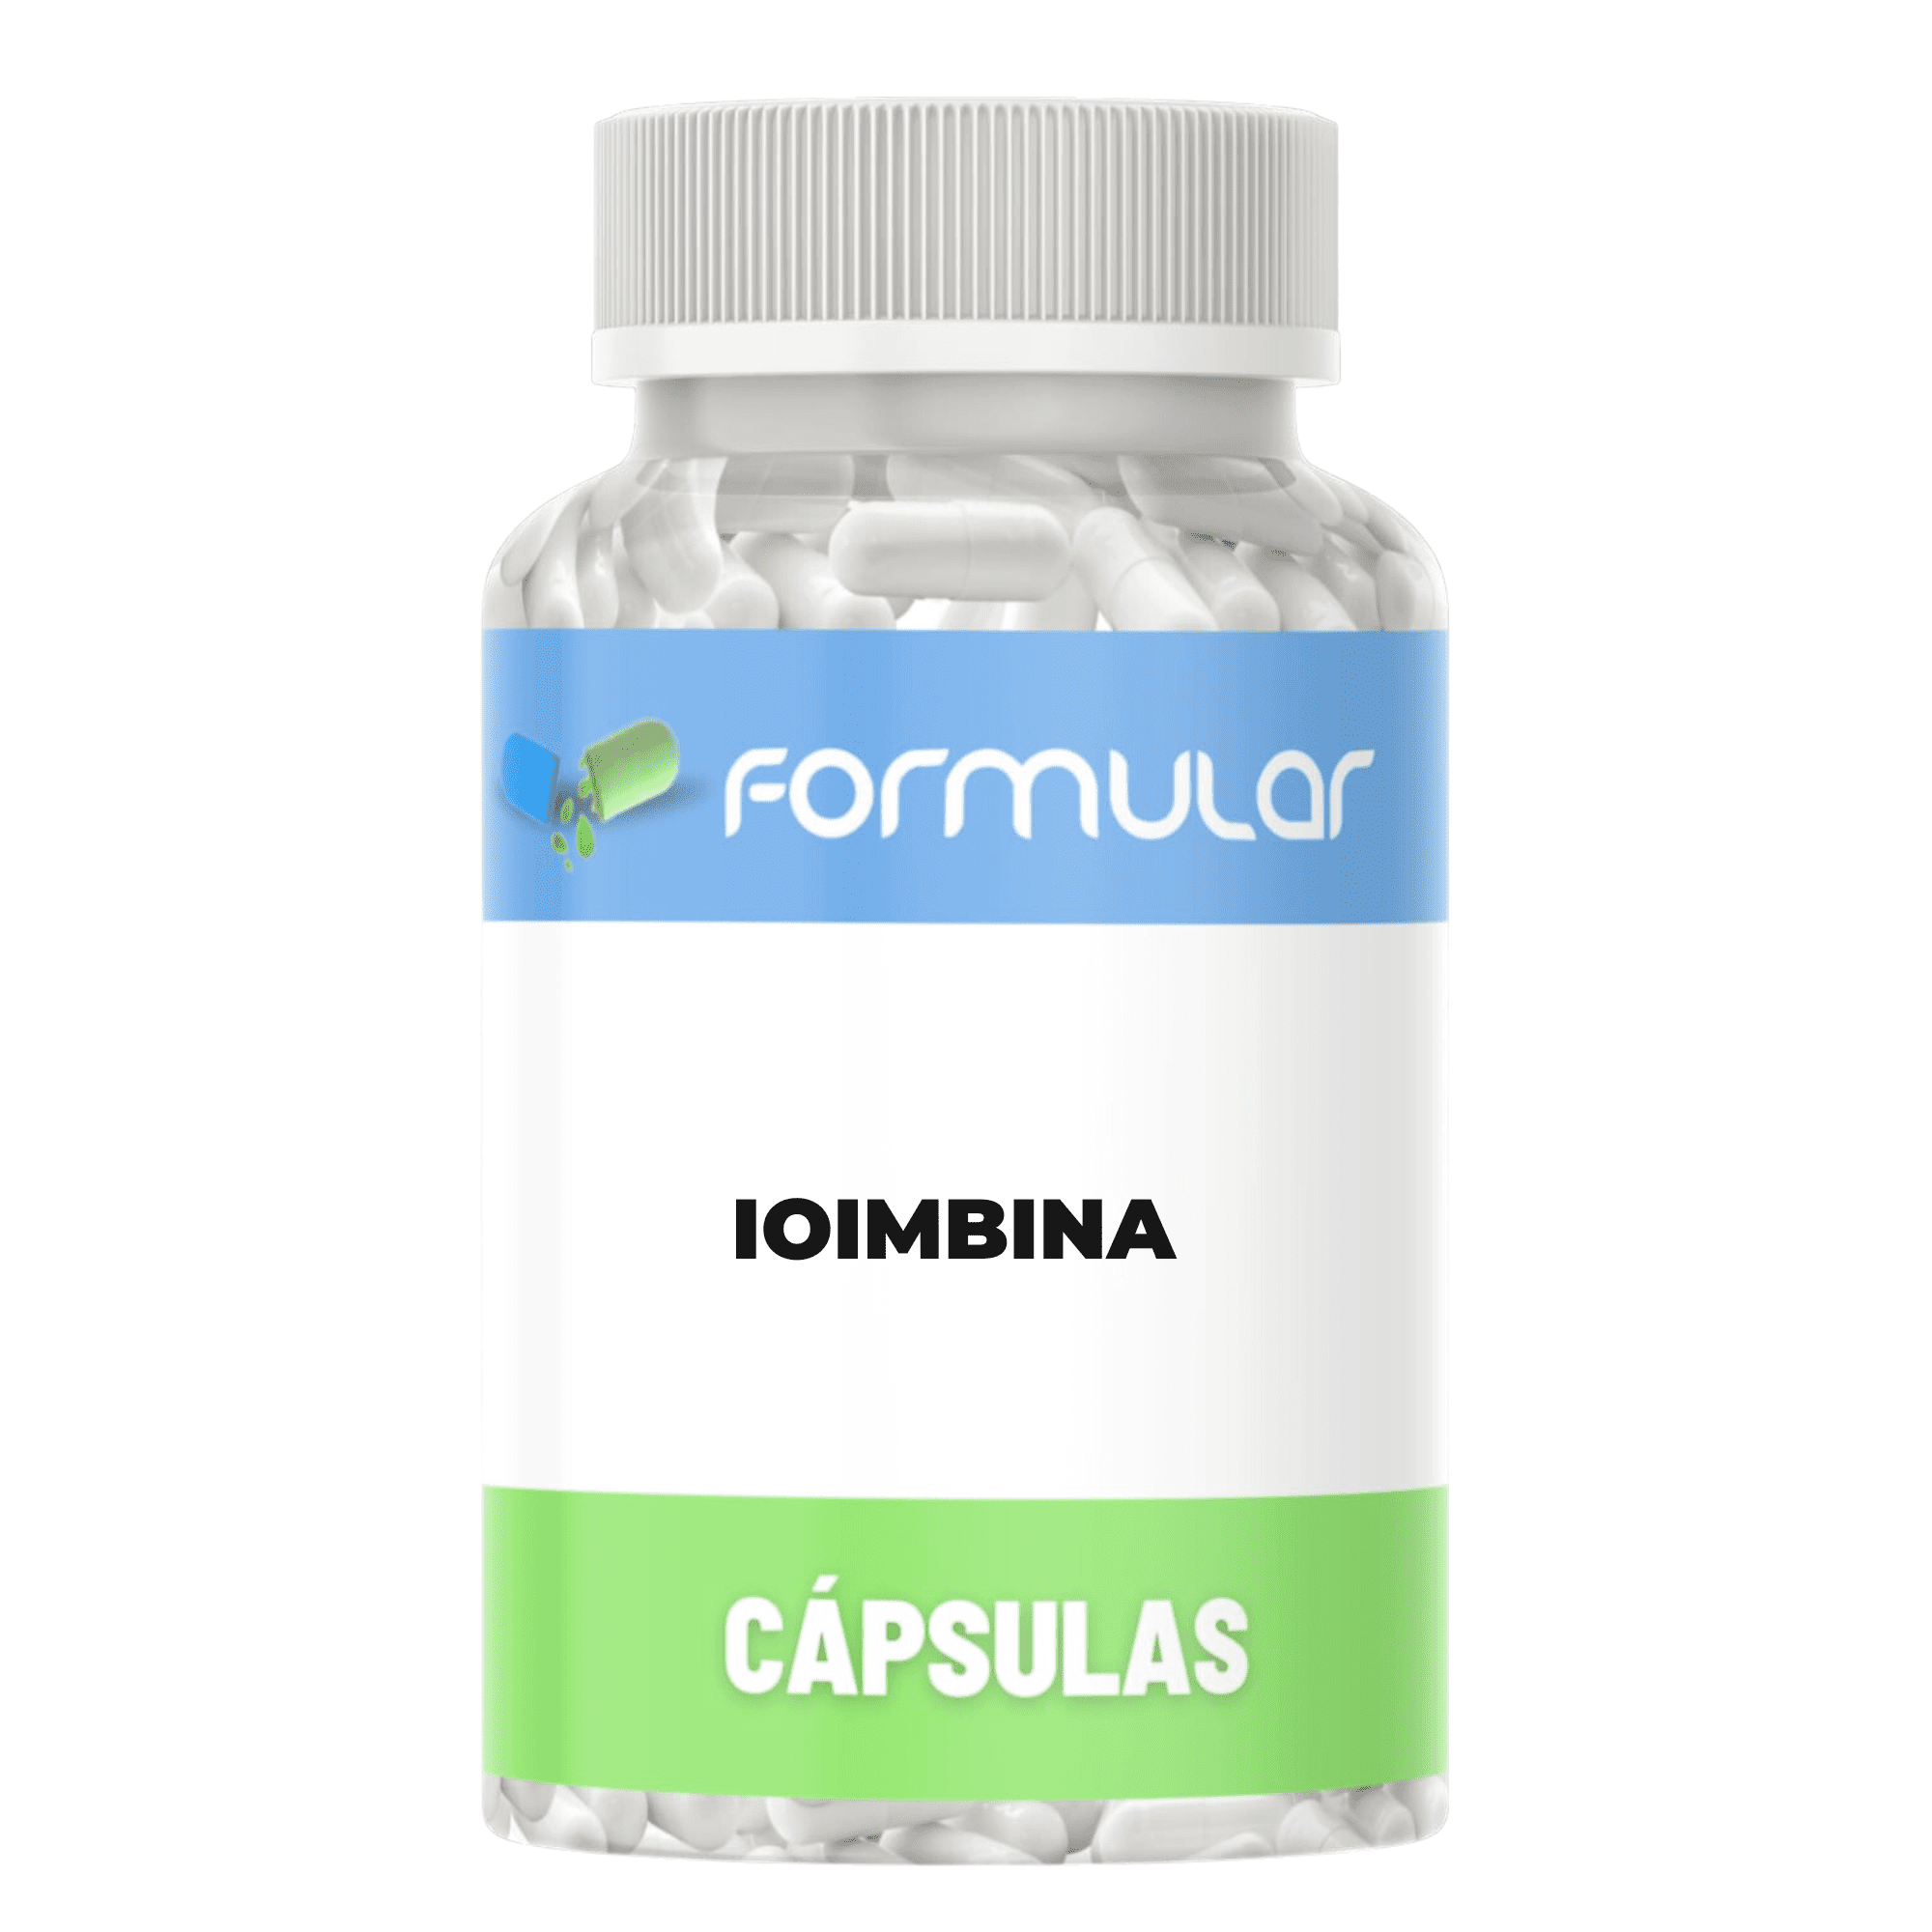 Ioimbina 15Mg - Capsulas - Super Promoção